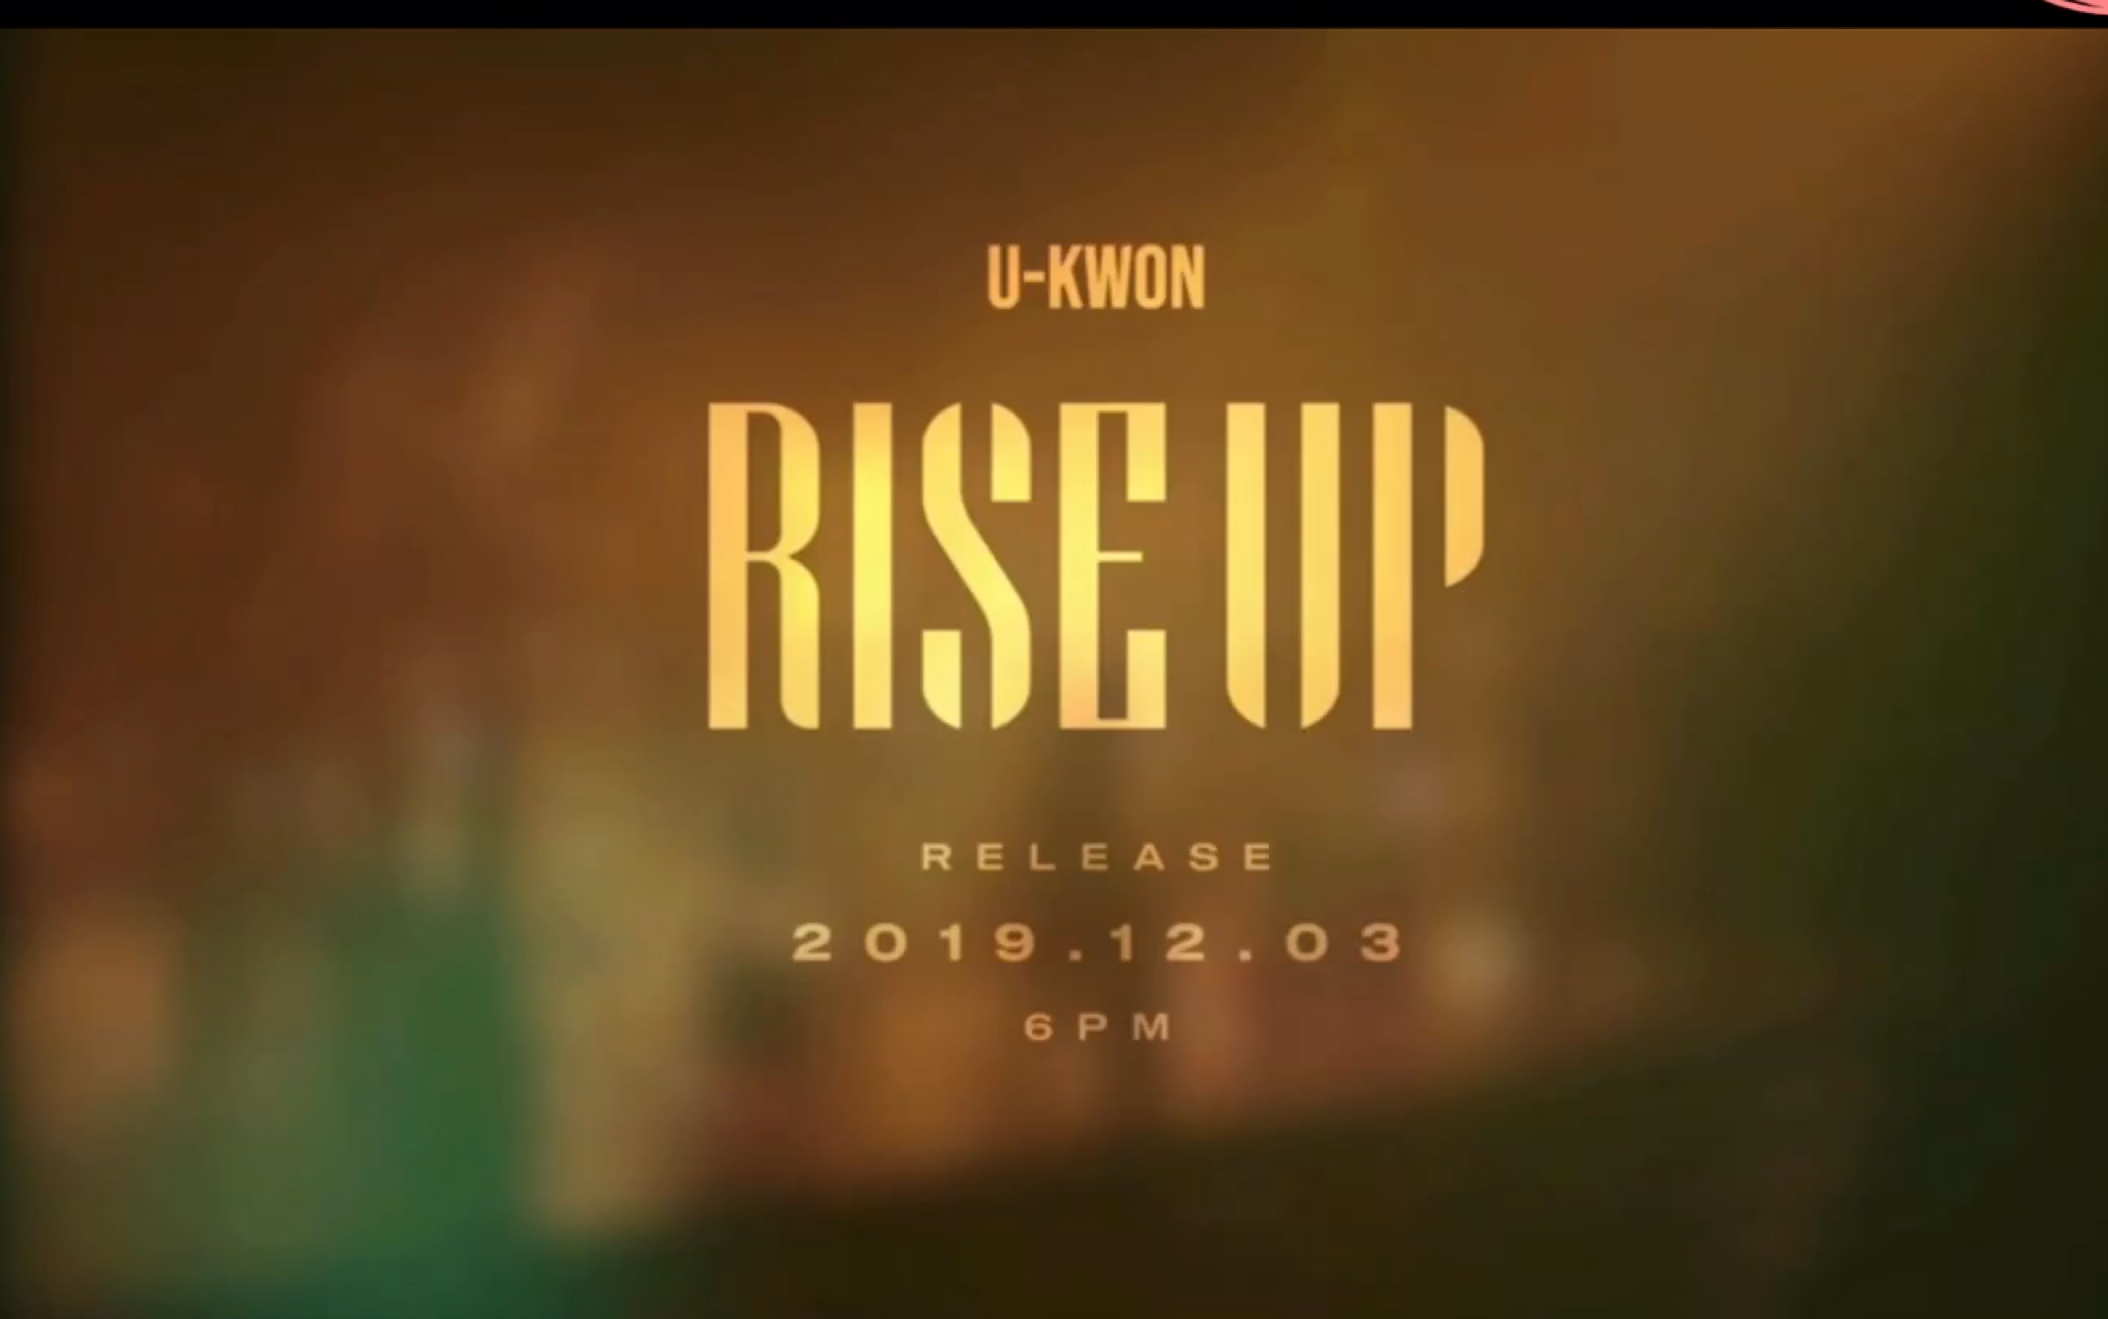 【金有权 】【U-Kwon 】有权solo曲Rise Up预告试听。化身金雷鬼！期待12.03